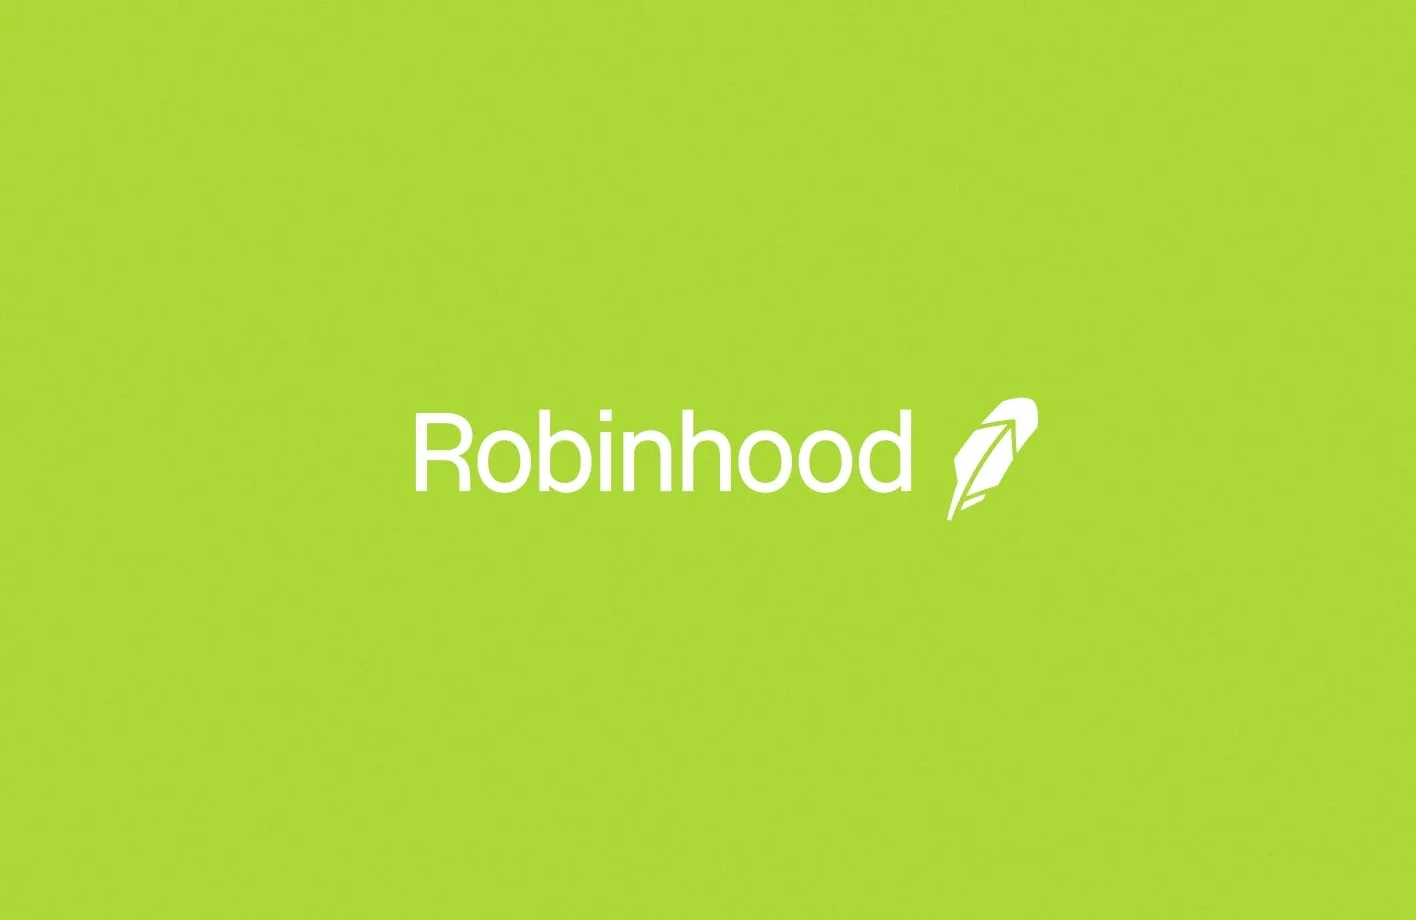 Robinhood (exited)